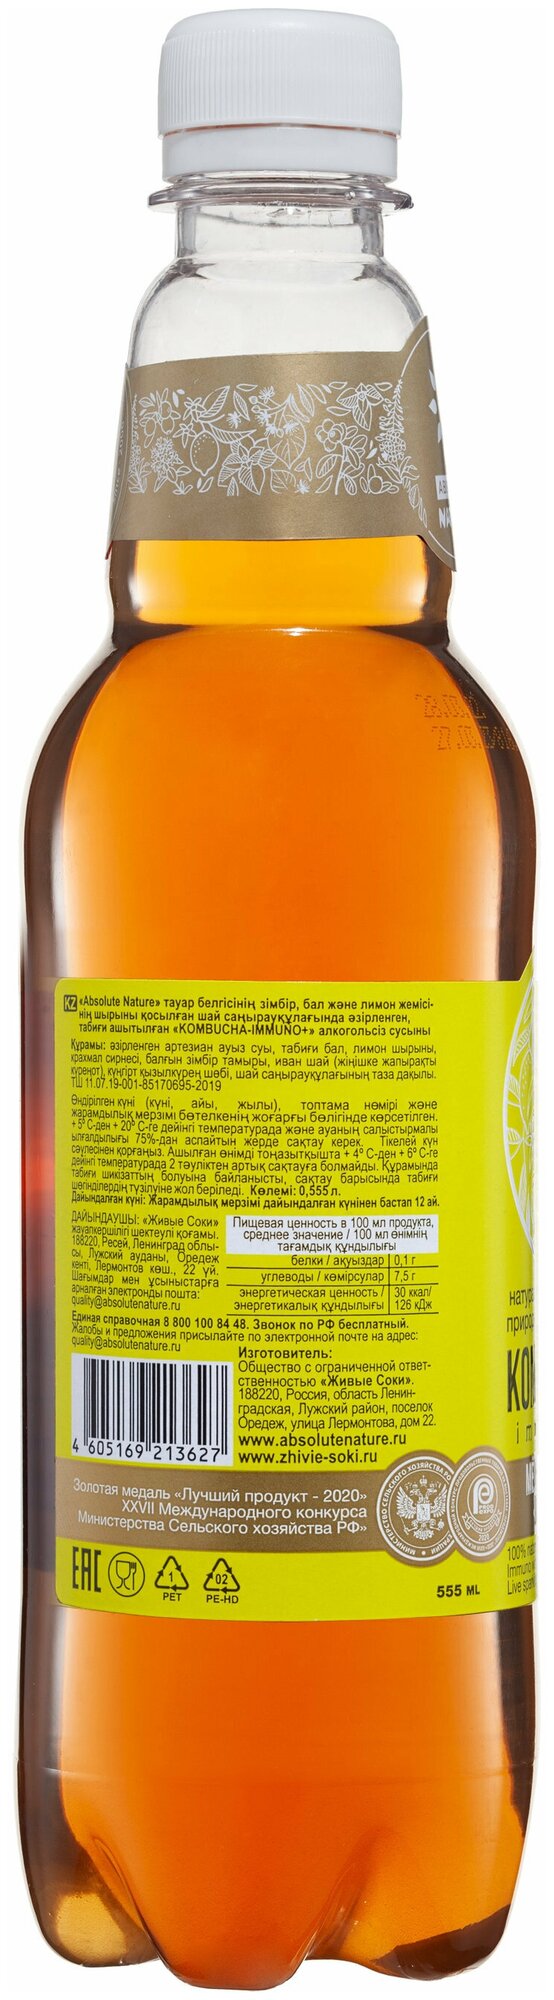 Комбуча Absolute Nature "Kombucha-Immuno+" без сахара с имбирем, мёдом, лимоном, 0.555 л. - фотография № 3